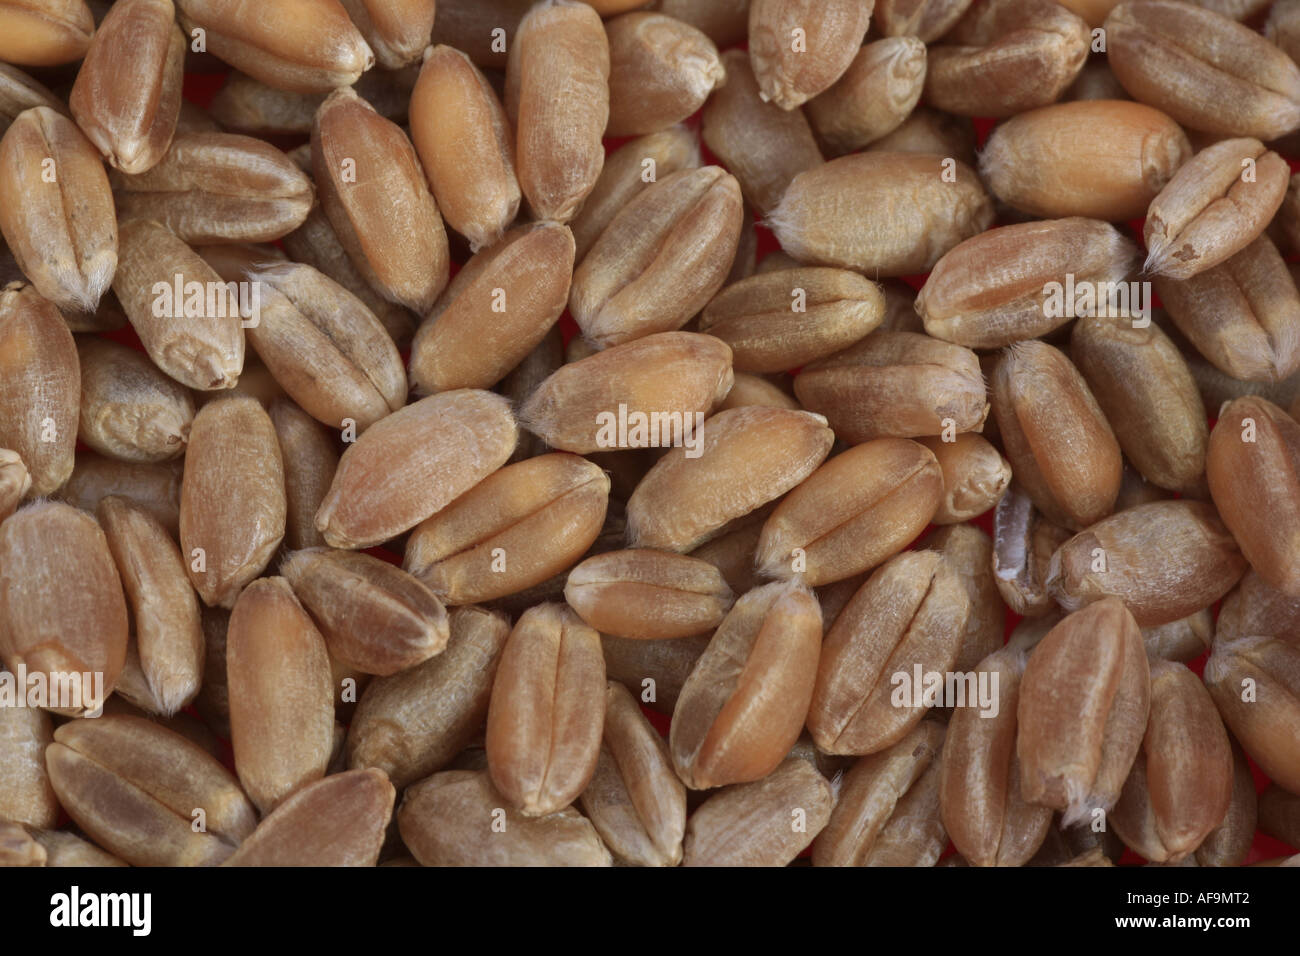 bread wheat, cultivated wheat (Triticum aestivum), grains Stock Photo